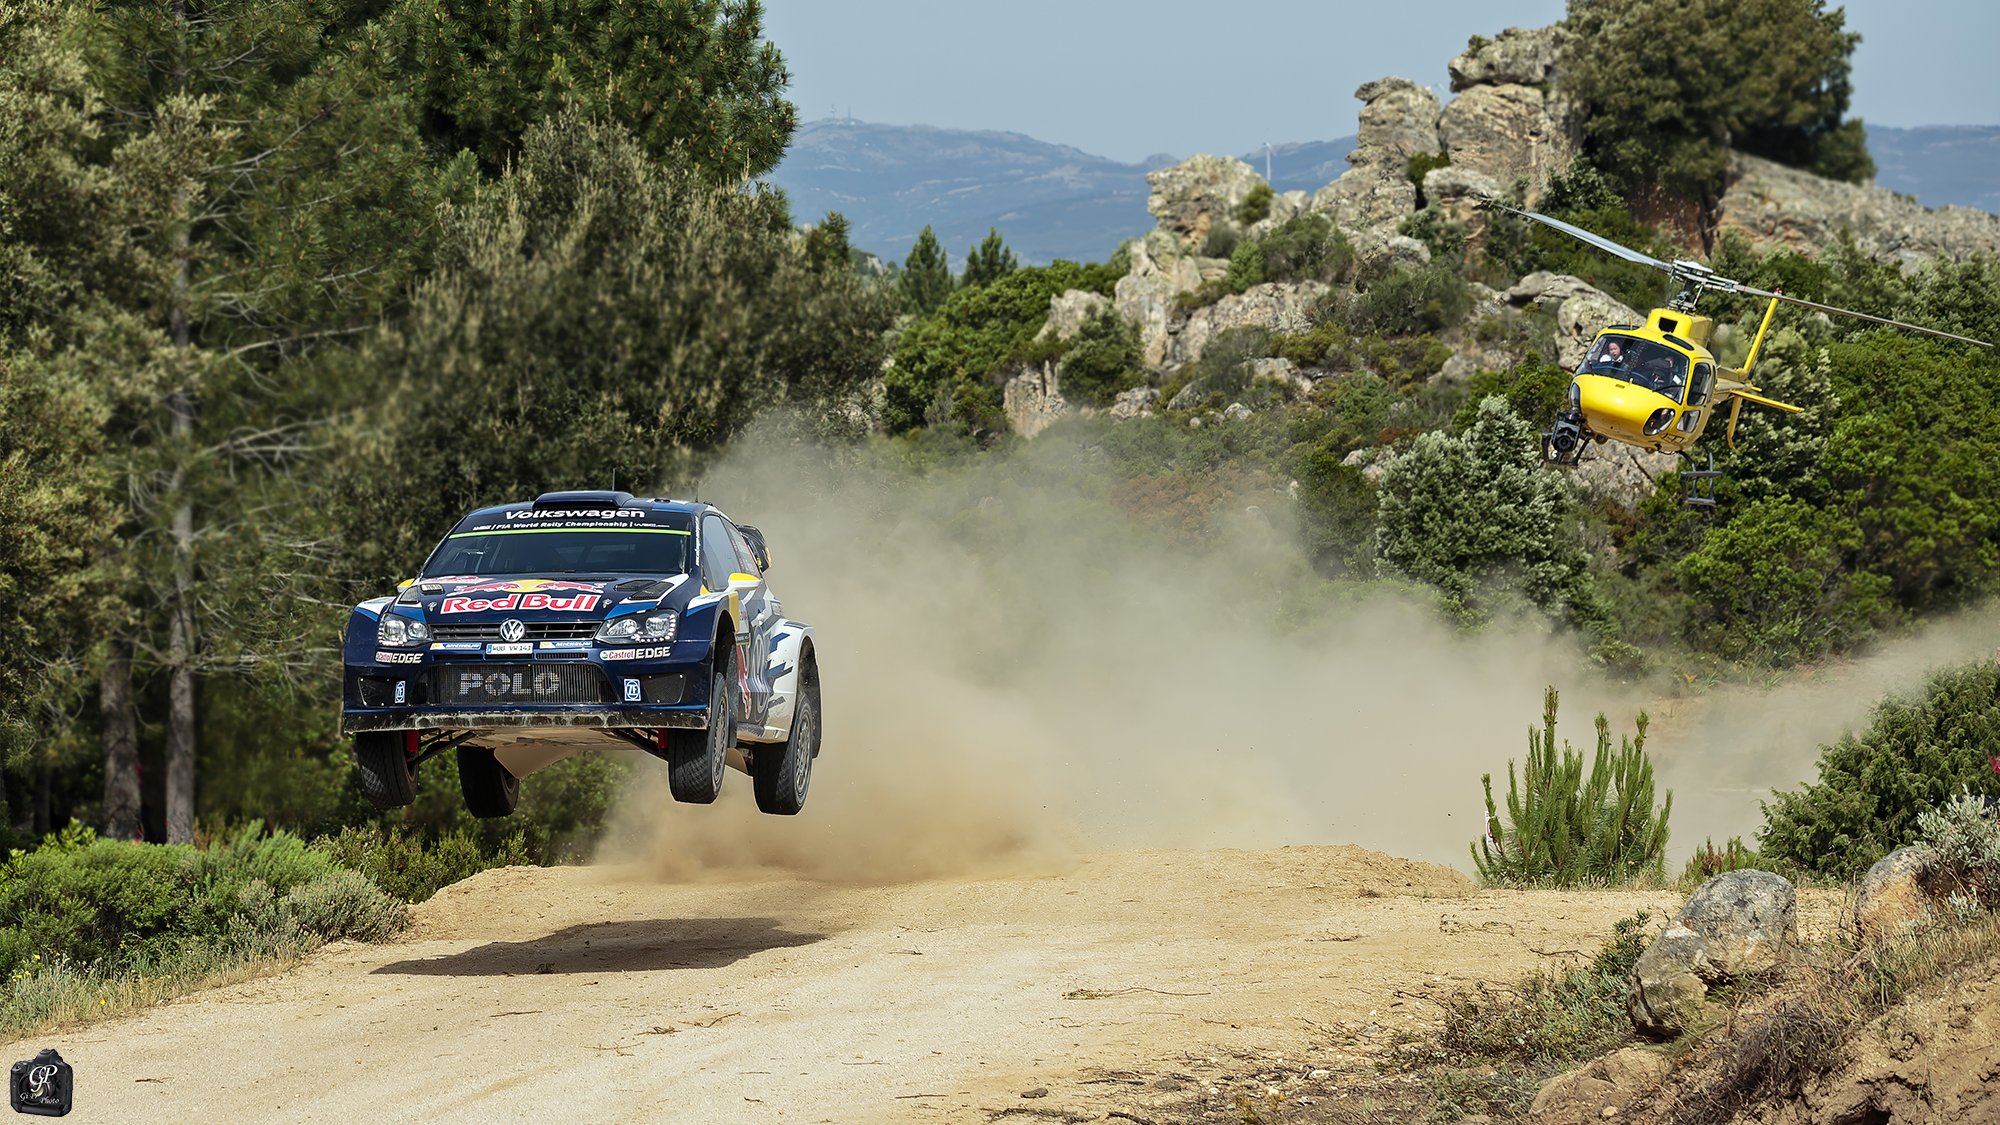 Rally sardinia - Jumping...